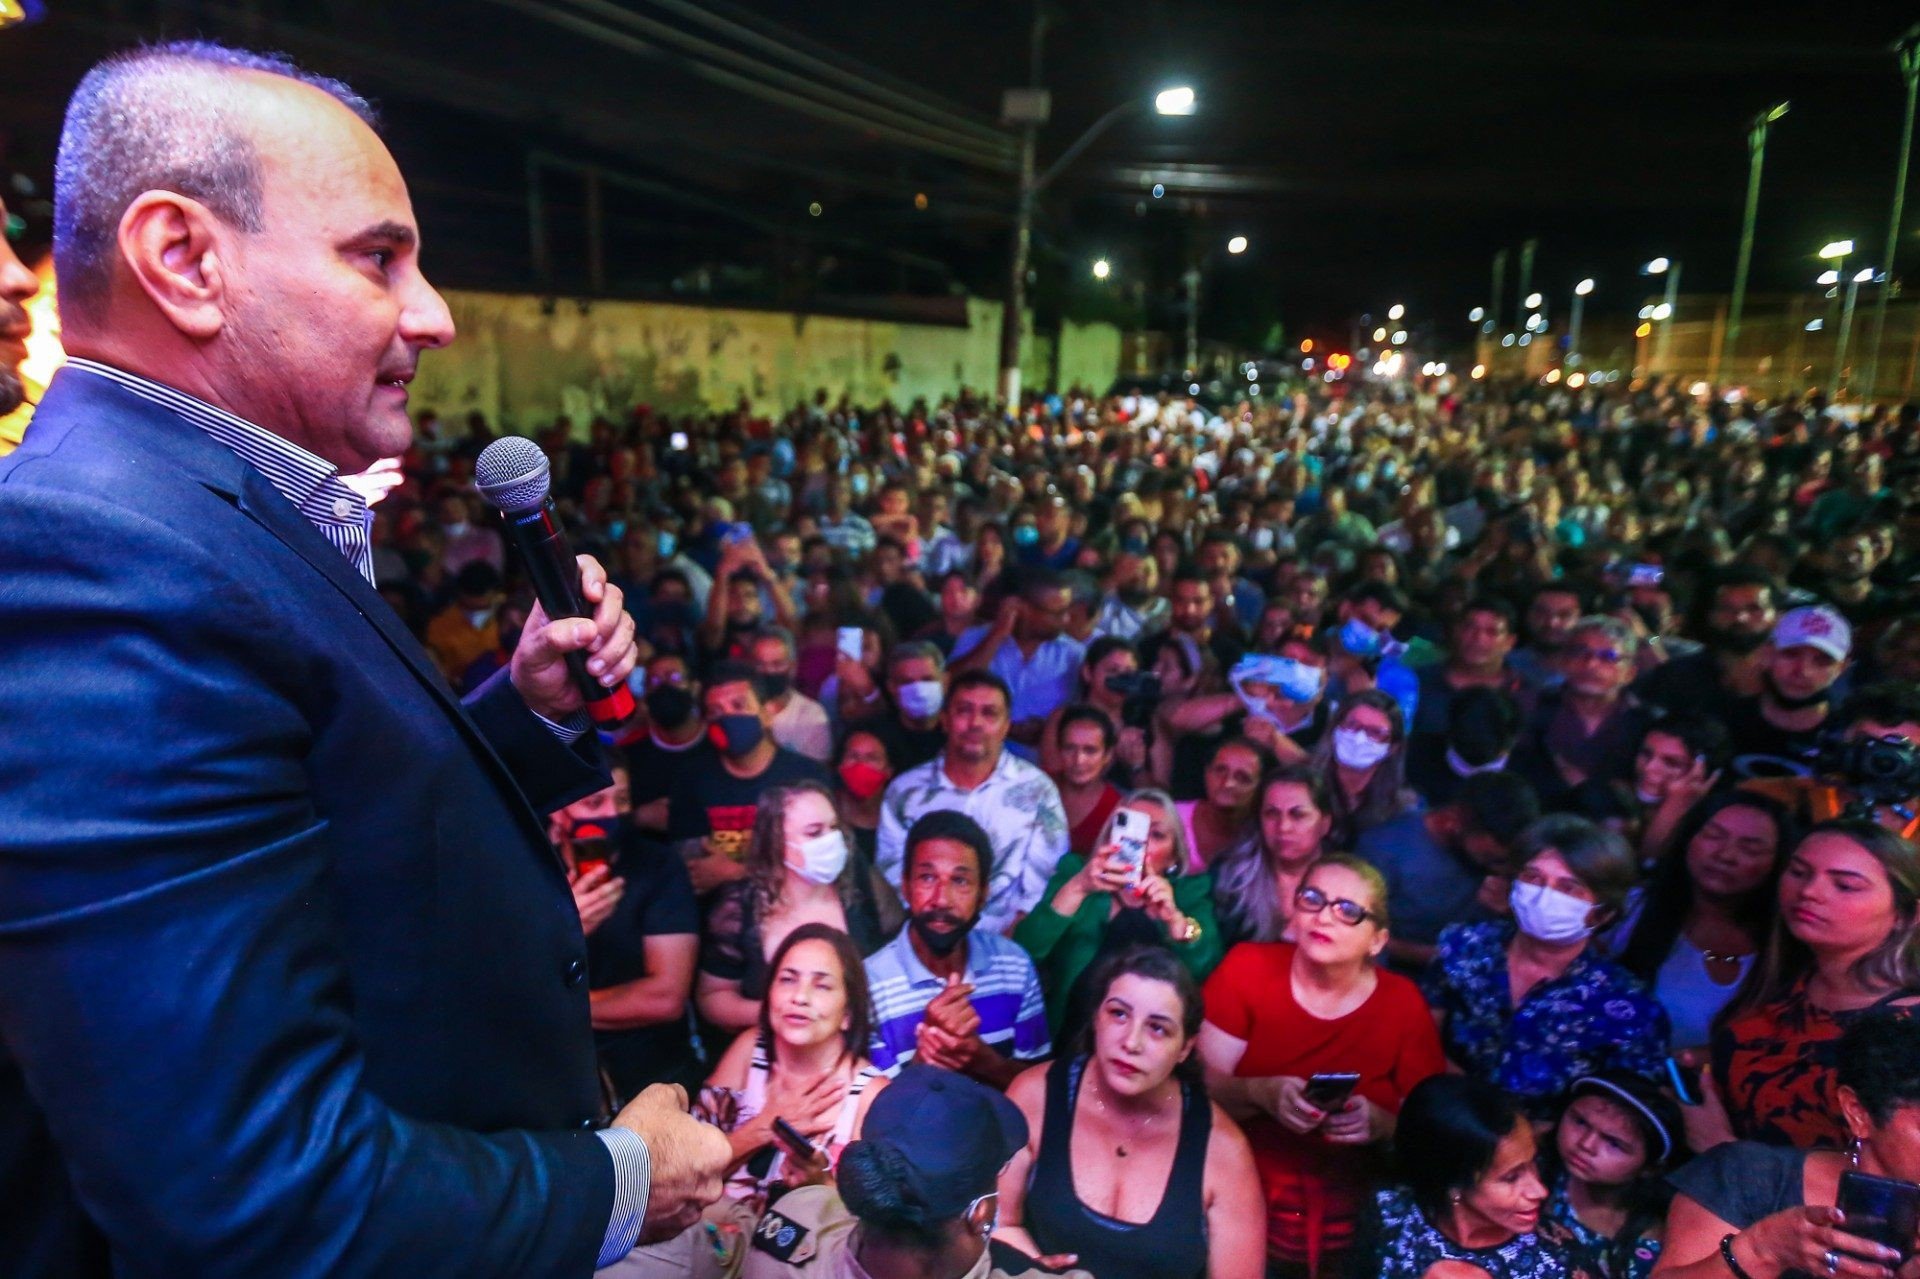 O prefeito Waguinho disse que irá continuar com obras para transformar a vida das pessoas - Rafael Barreto / PMBR